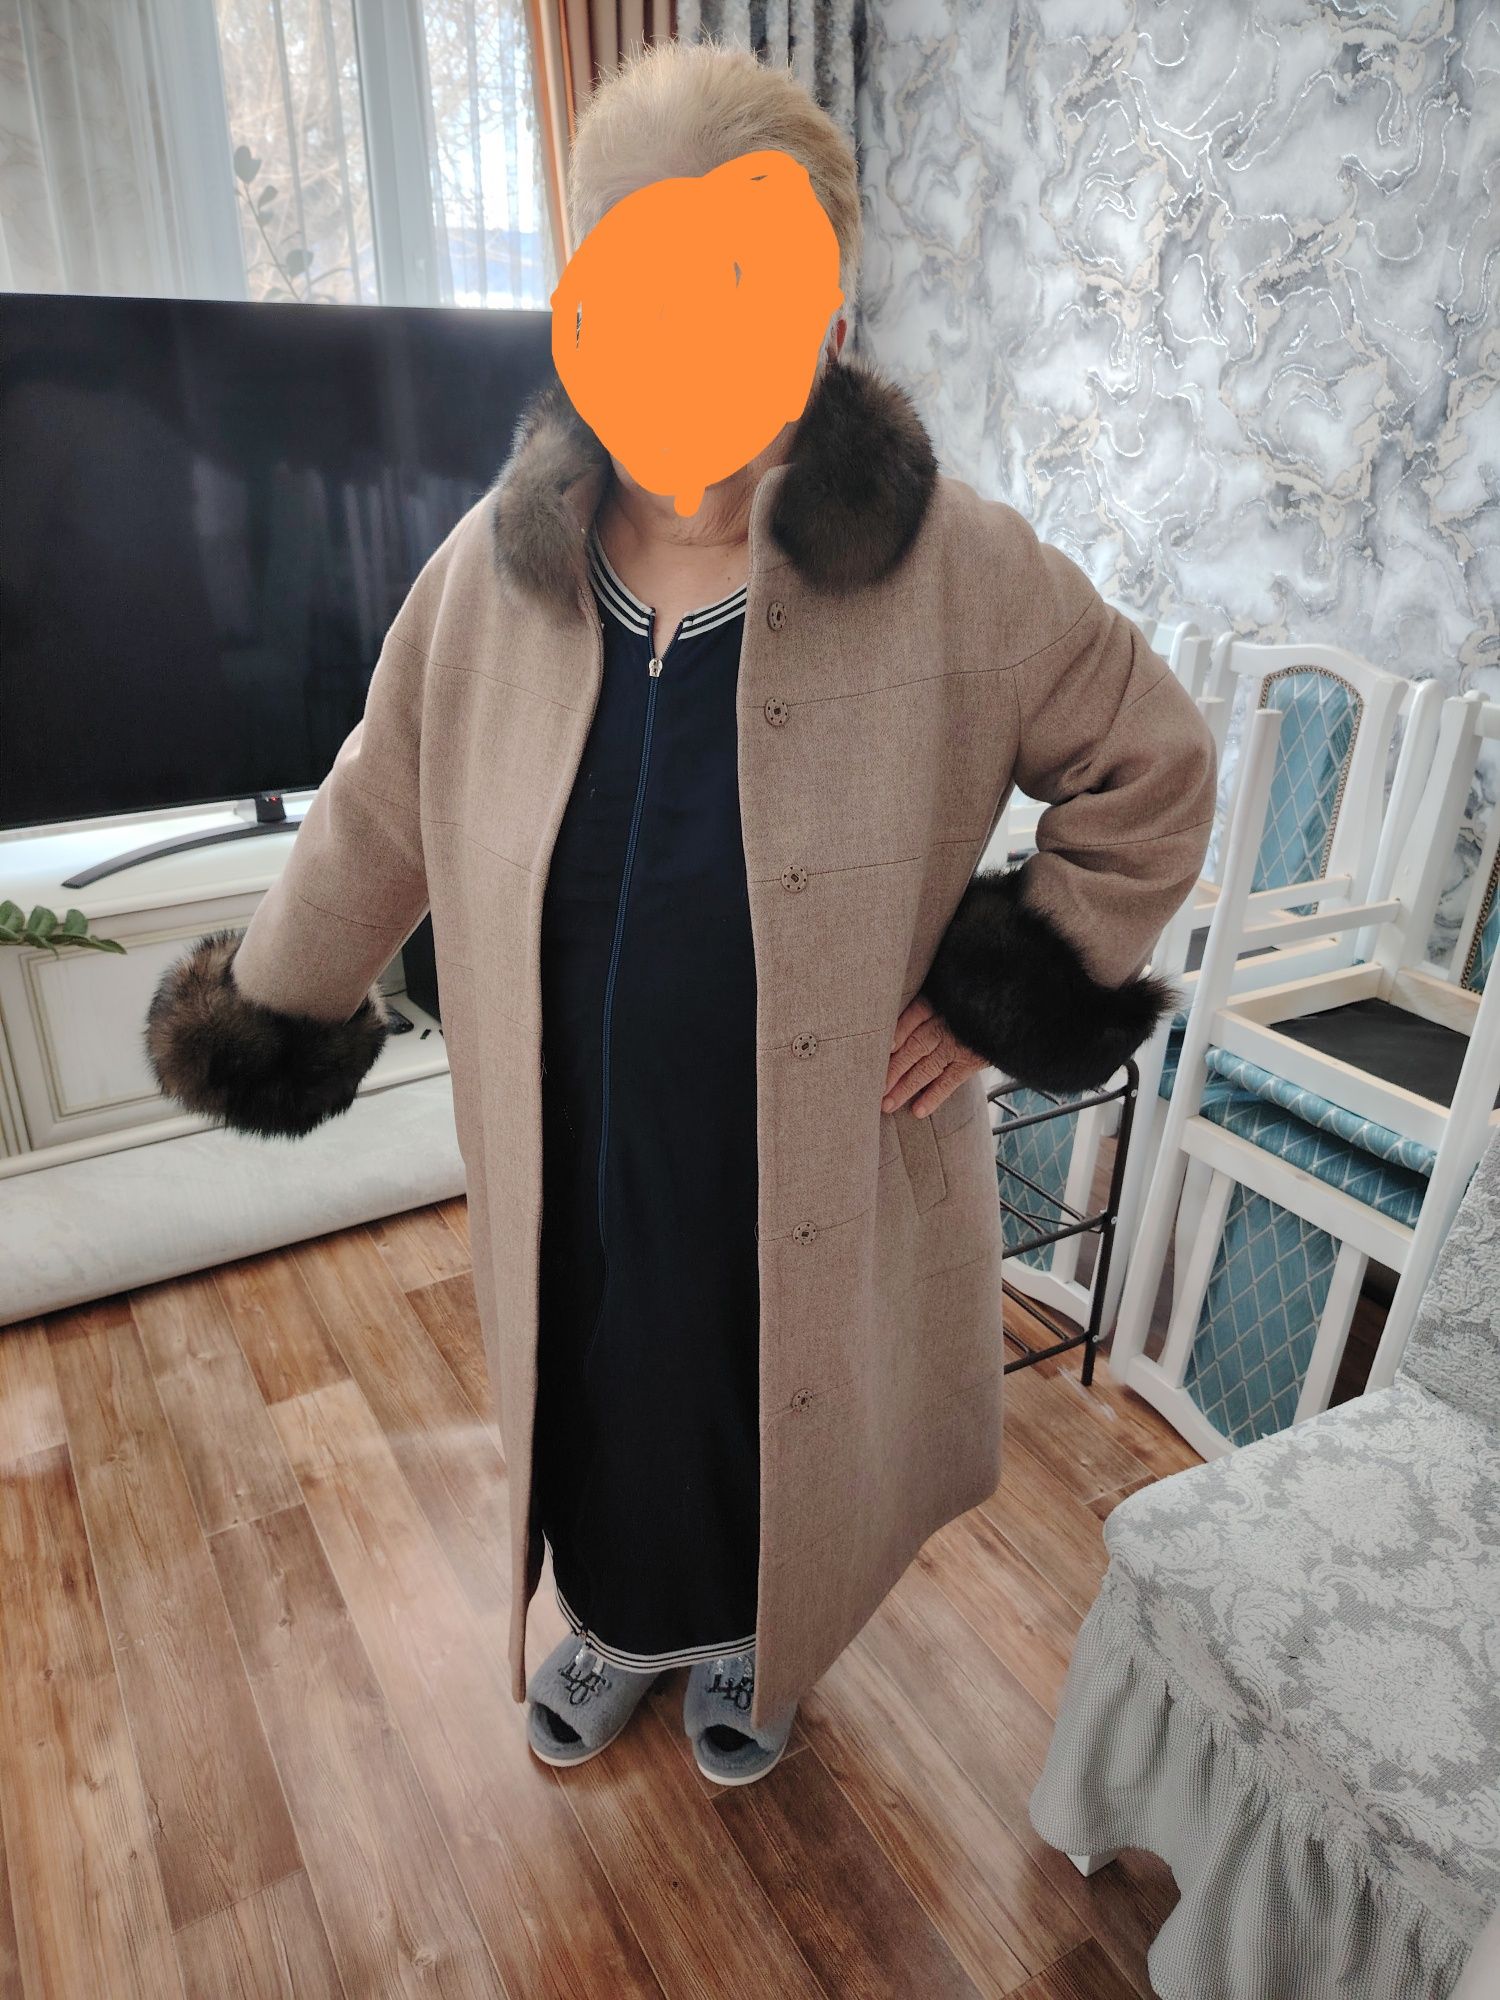 Срочно продам новое турецкое пальто, весна-осень